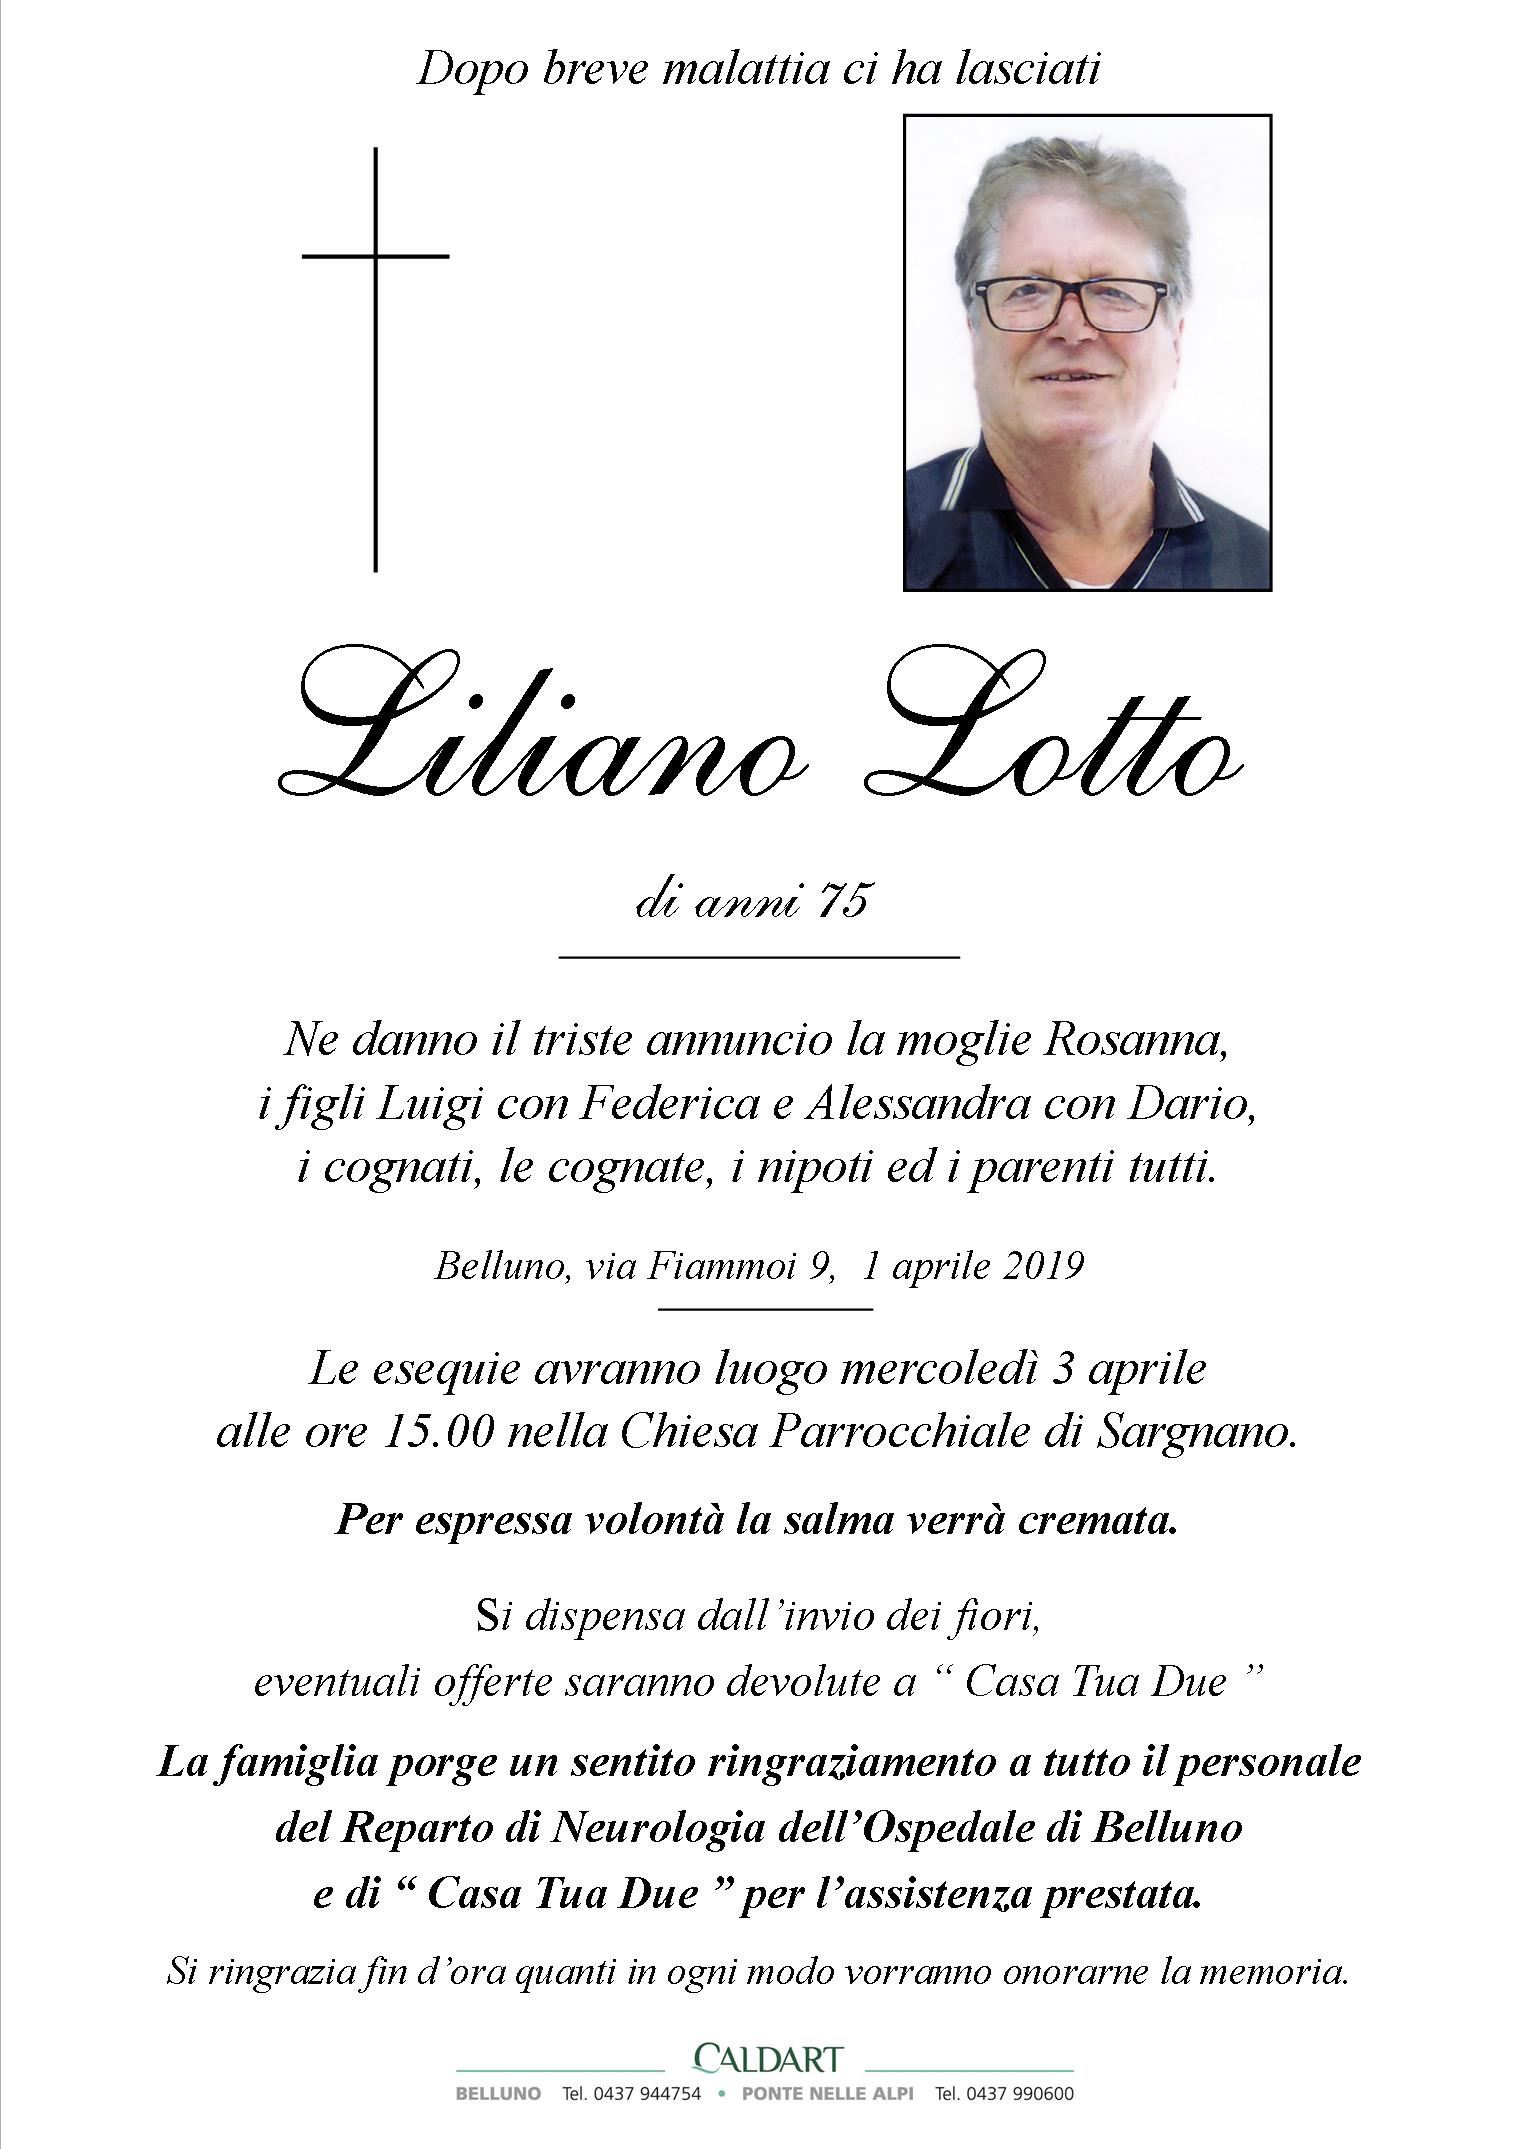 Lotto Liliano